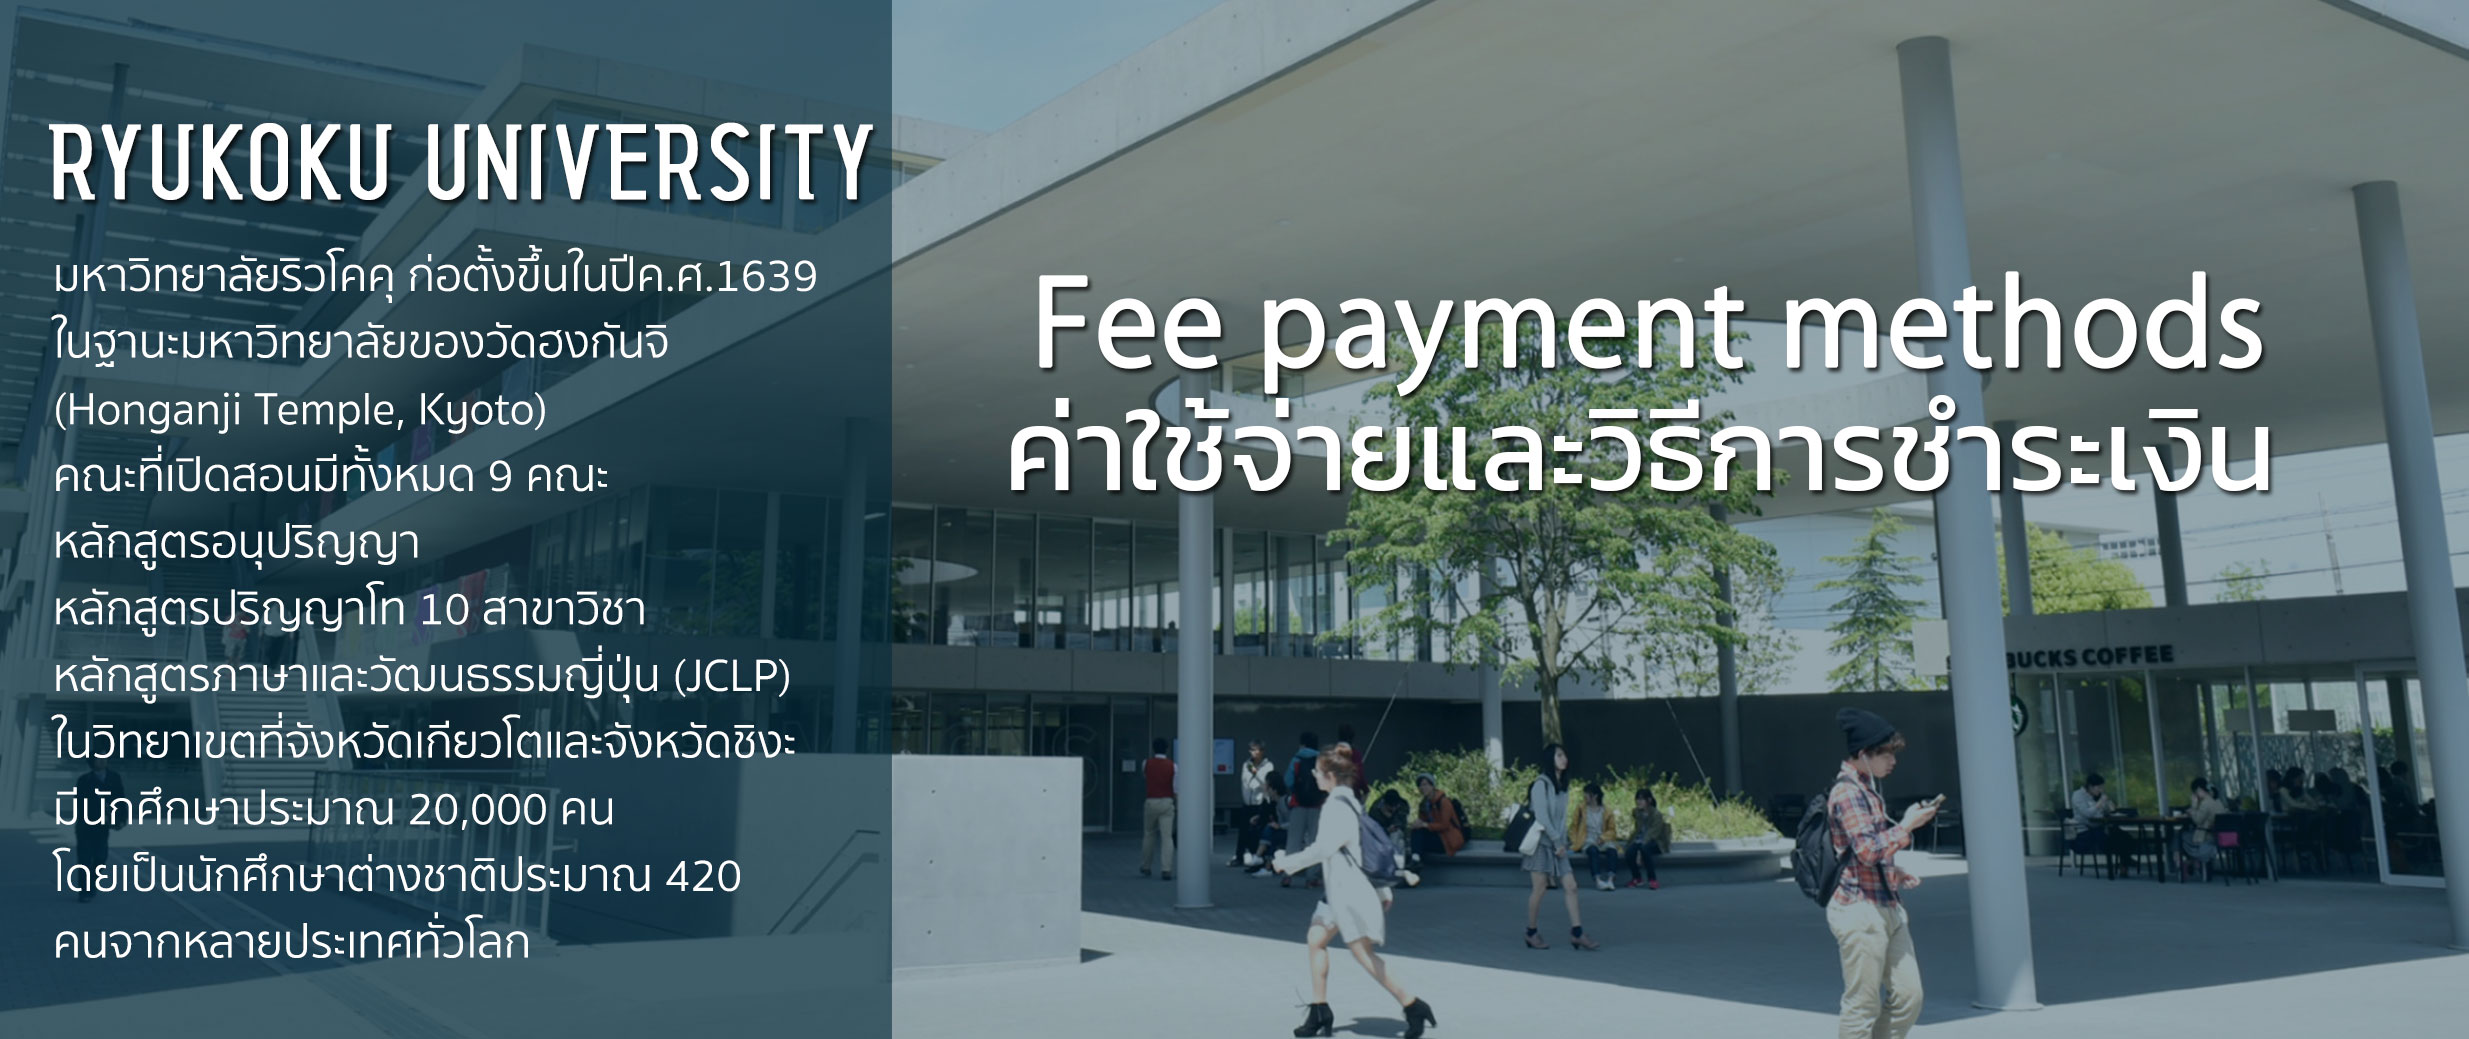 ค่าใช้จ่ายและวิธีการชำระเงินของ Ryukoku University